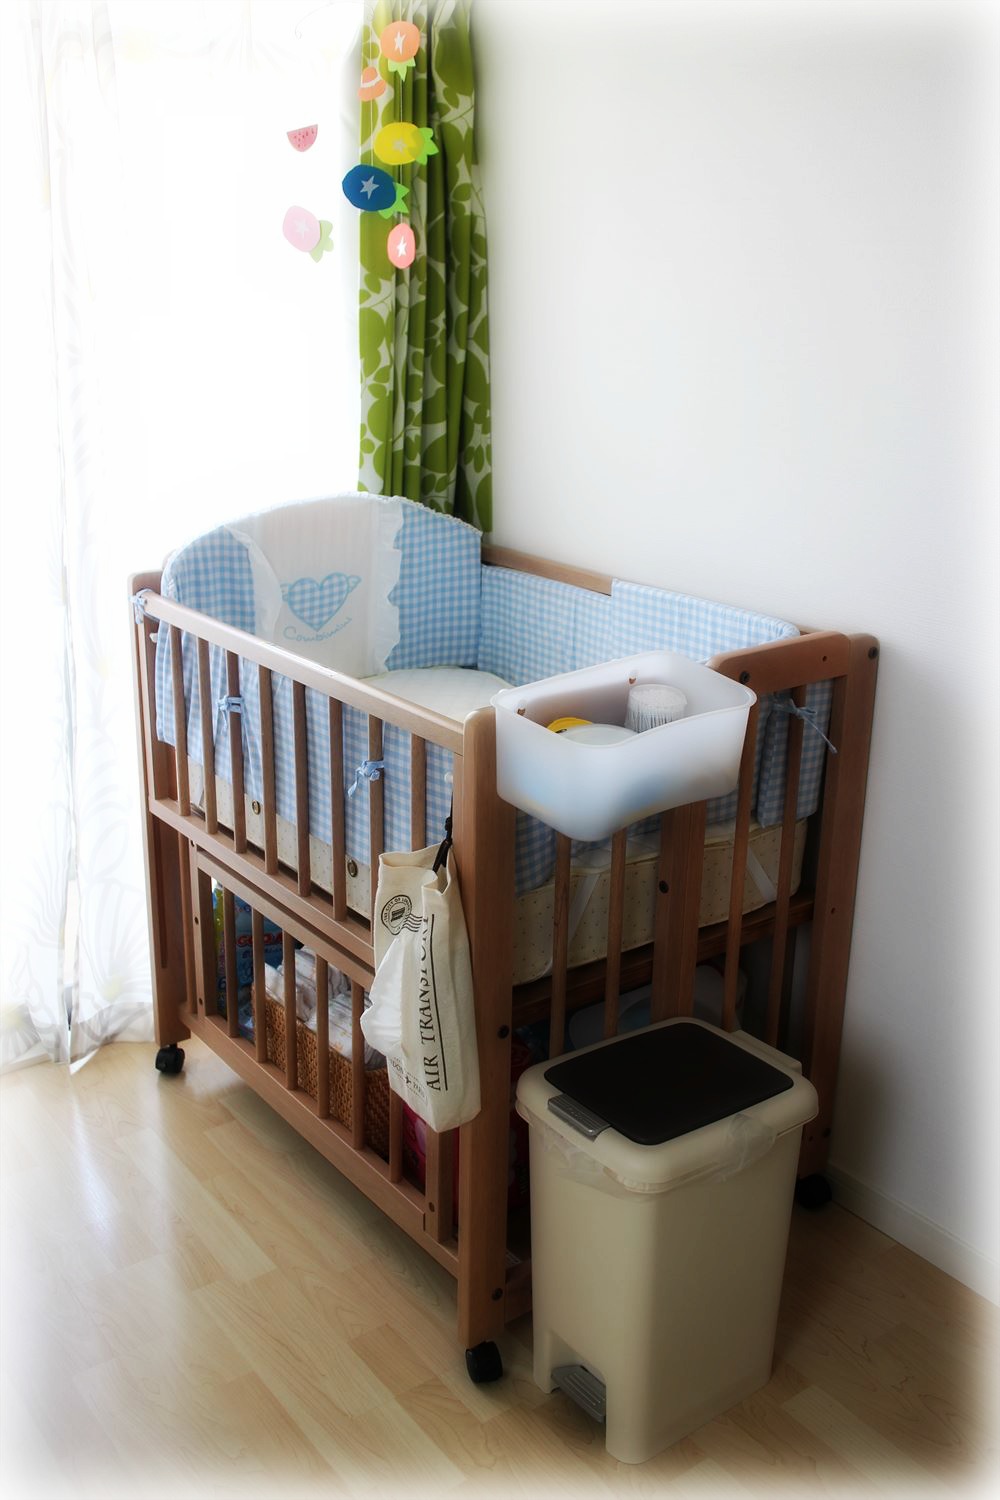 公式クリアランス ベビー☺️ベビーベッド☺️赤ちゃんの寝具❤ベット❤使いやすい✨収納便利❤ 布団/毛布